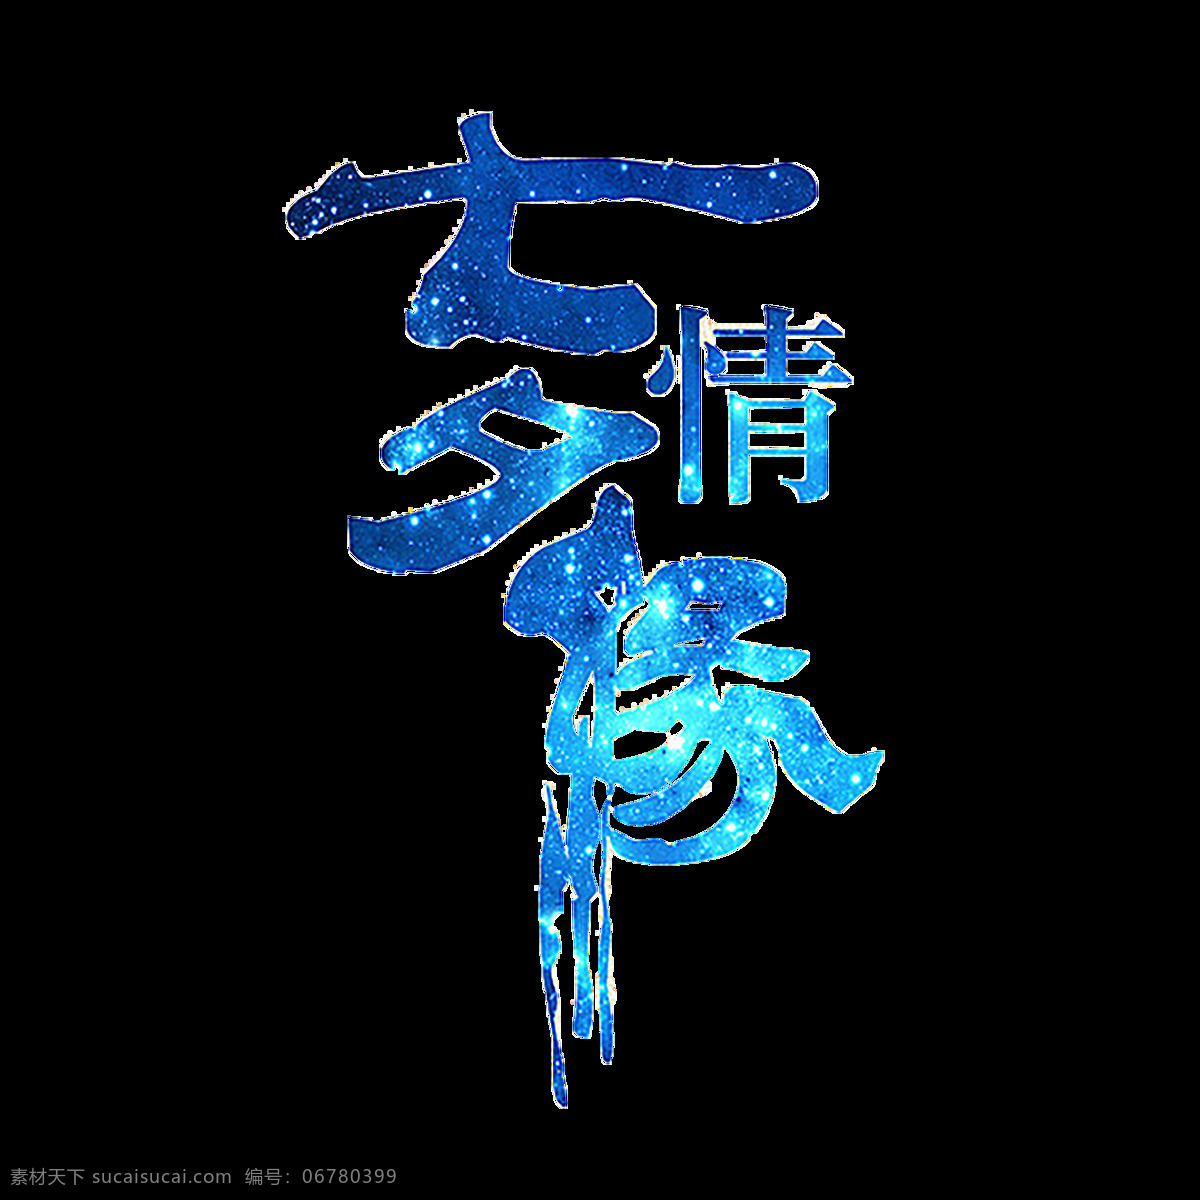 七夕 情缘 艺术 字 七夕情缘 艺术字 字体设计 中国情人节